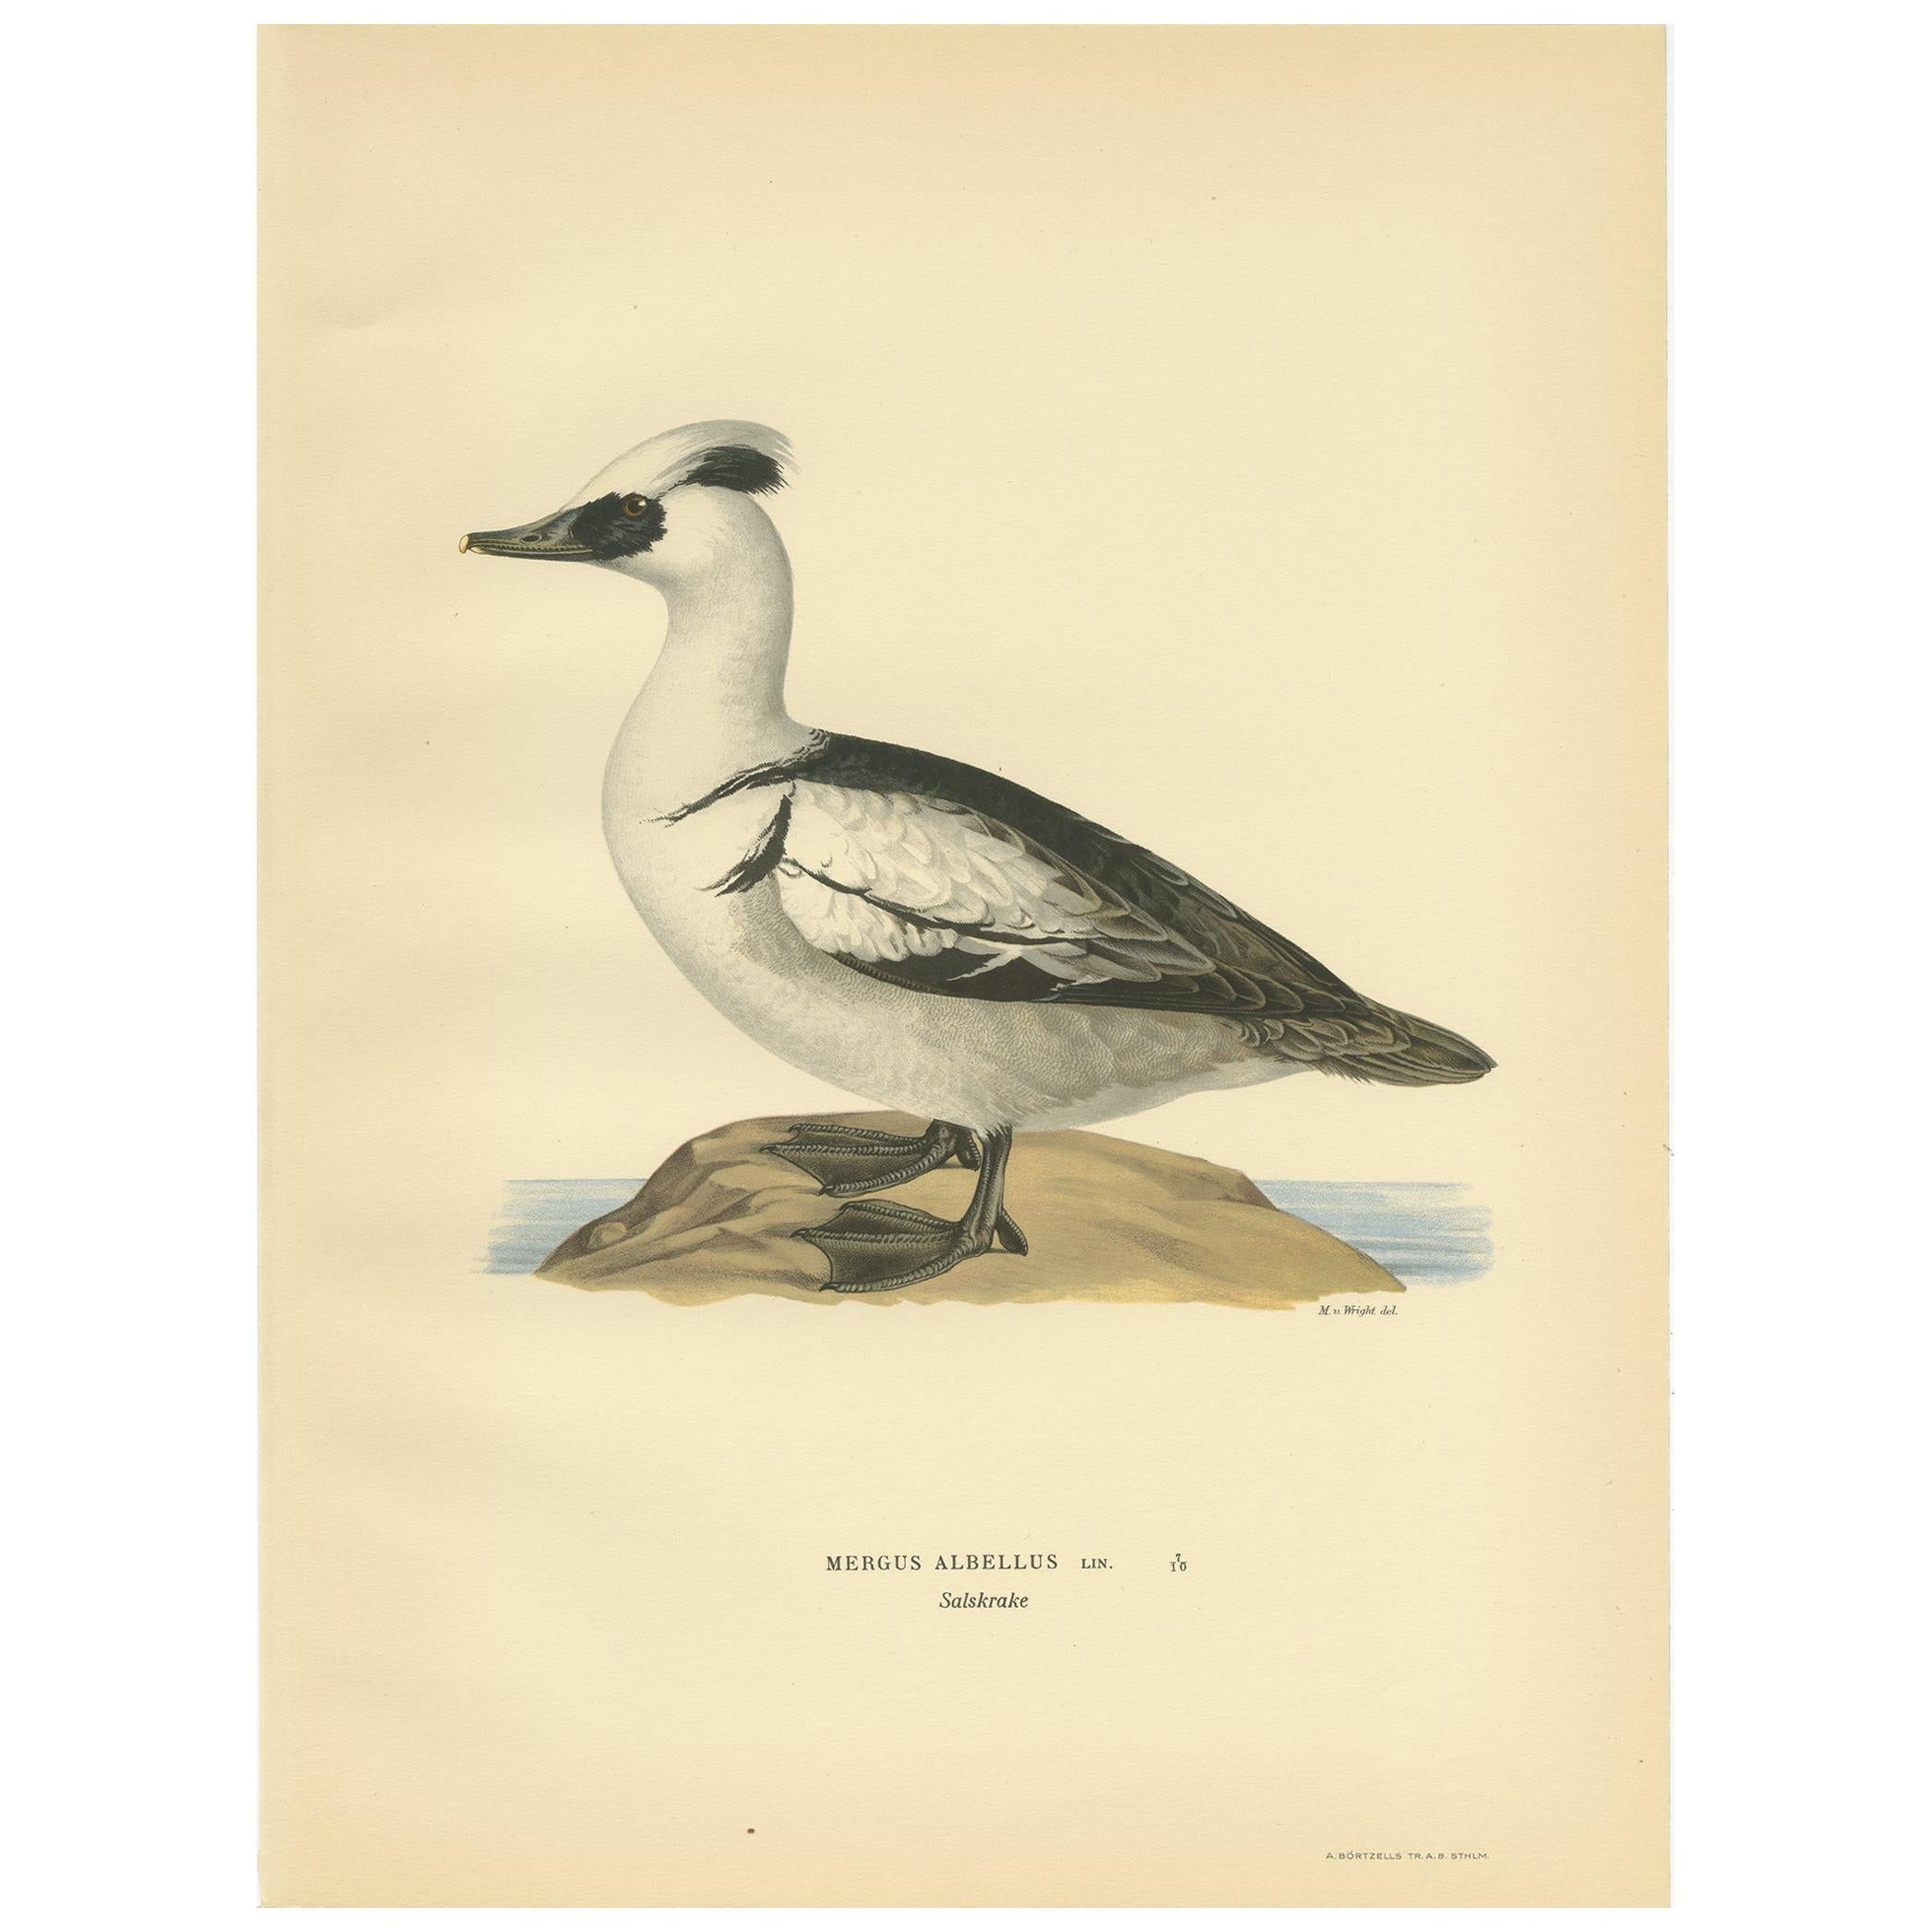 Antique Bird Print of the Smew by Von Wright, 1929